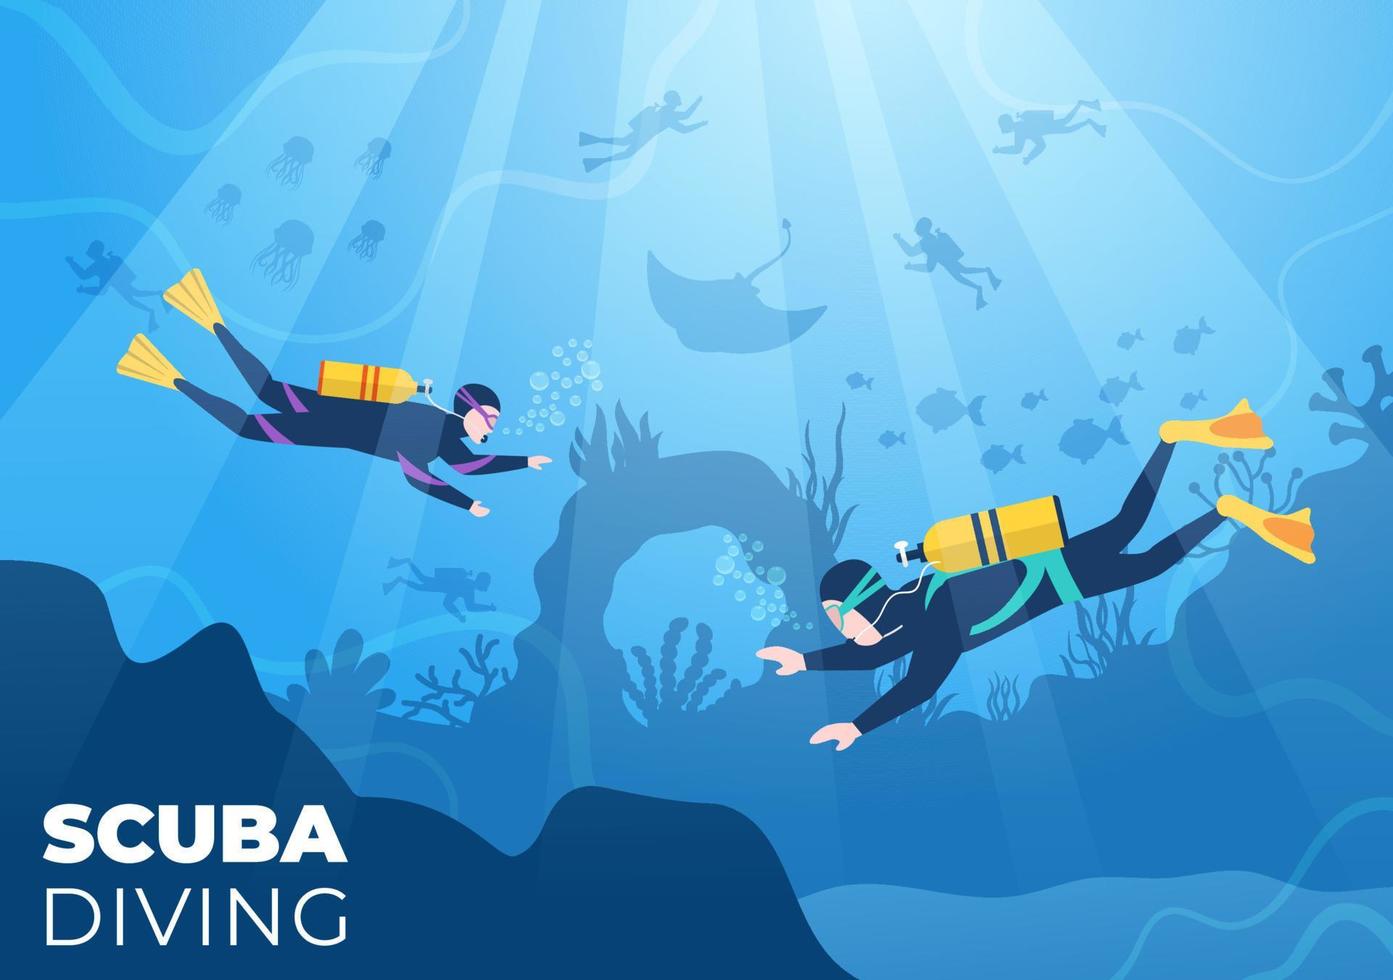 immersioni subacquee con attrezzatura per il nuoto subacqueo per esplorare la barriera corallina, la flora e la fauna marina o i pesci nell'oceano in un'illustrazione vettoriale piatta del fumetto